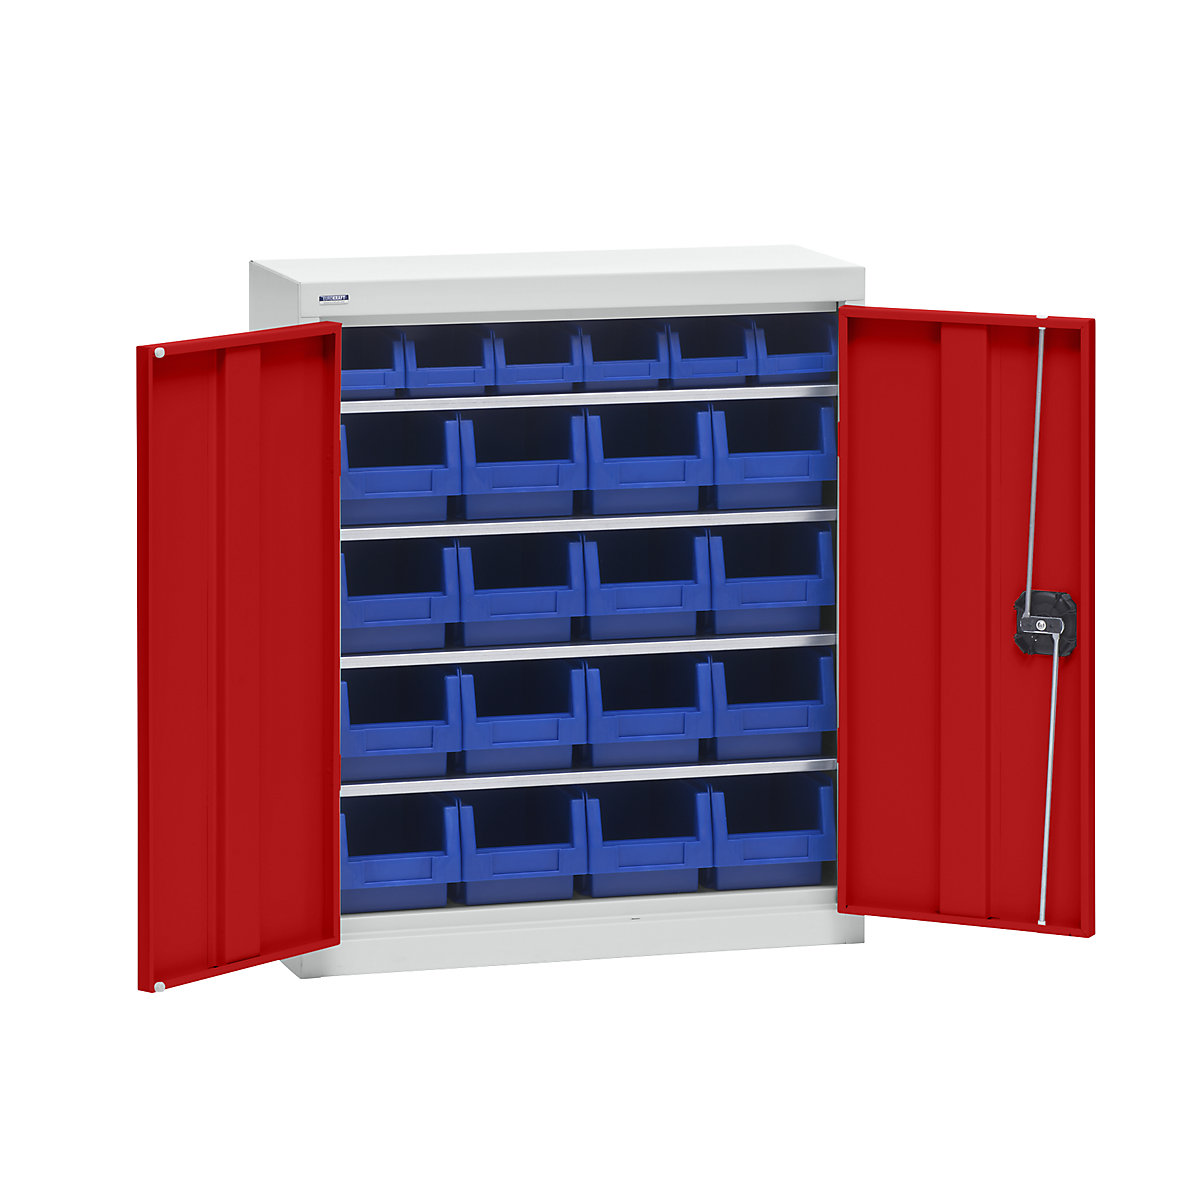 Omara za material s skladiščnimi posodami – eurokraft pro, višina 780 mm, 4 police, svetlo siva / prometno rdeča-4